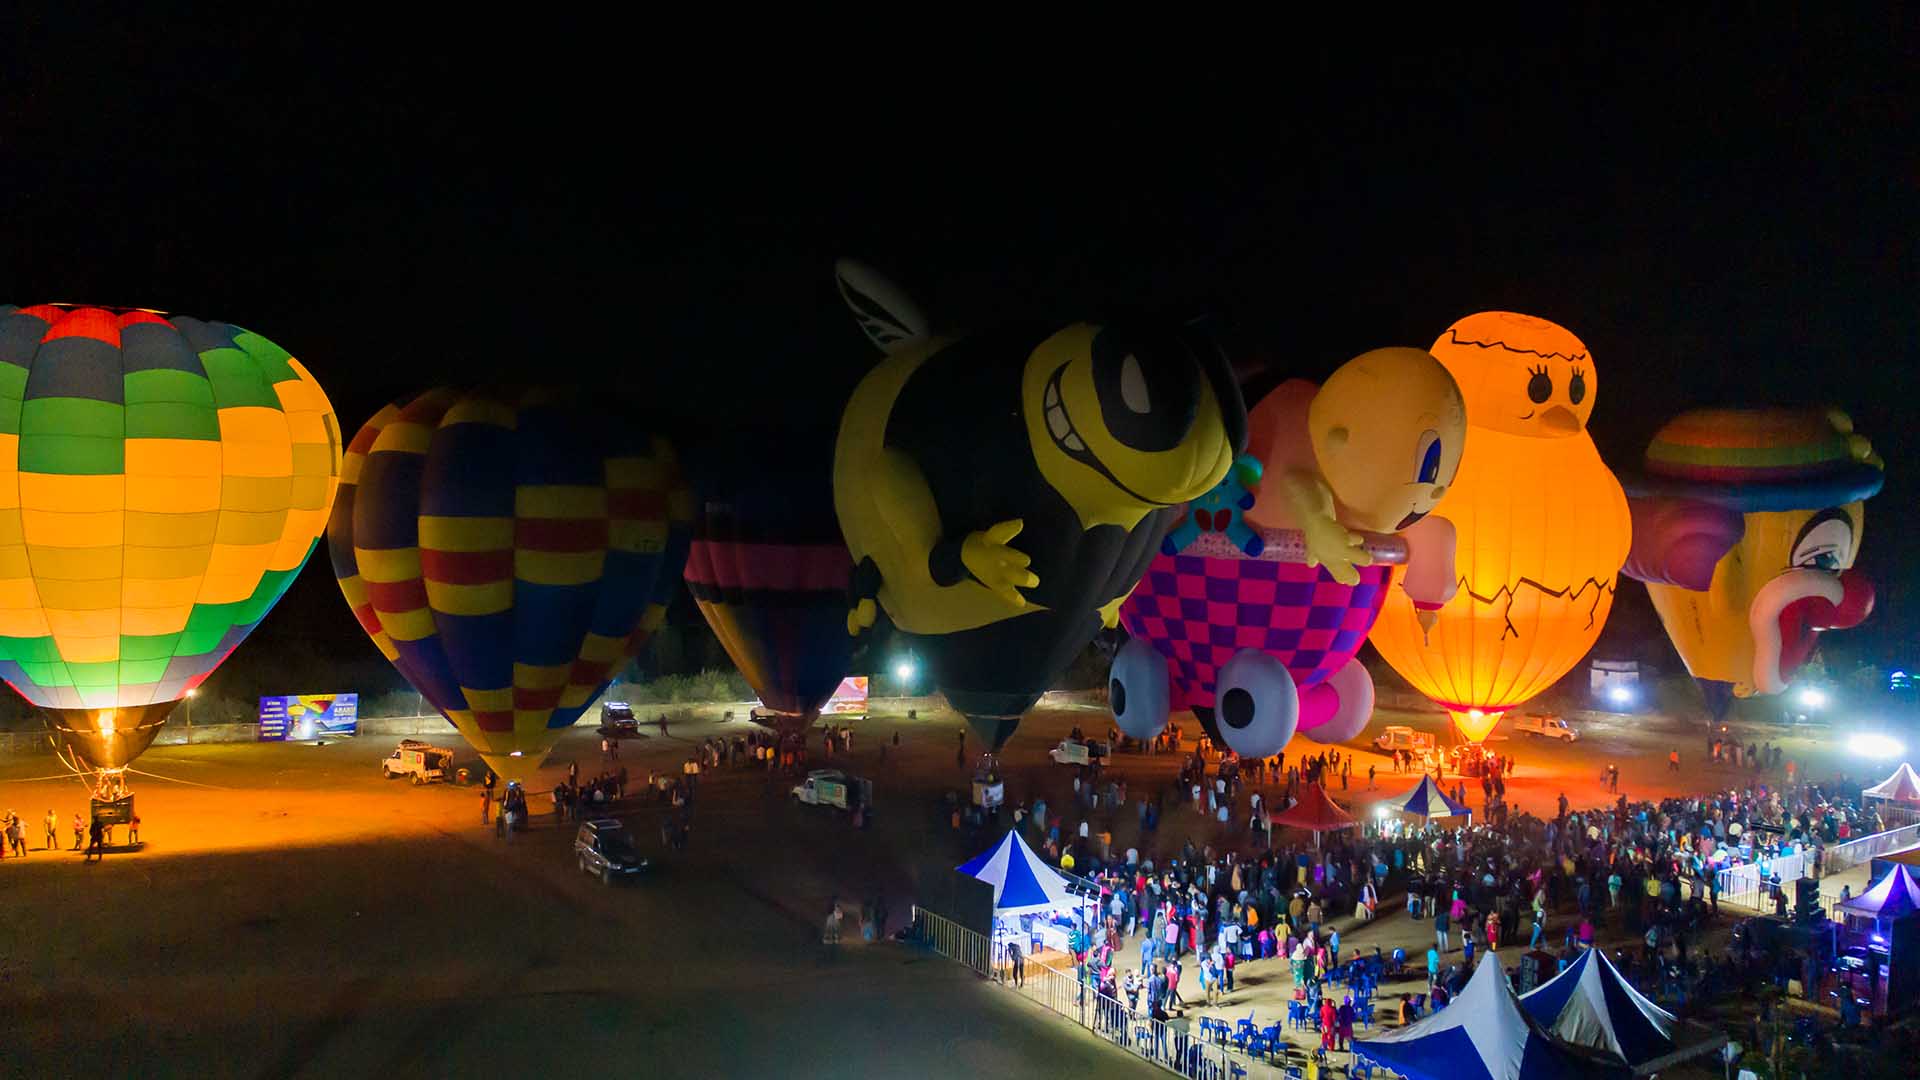 hot air balloon rides